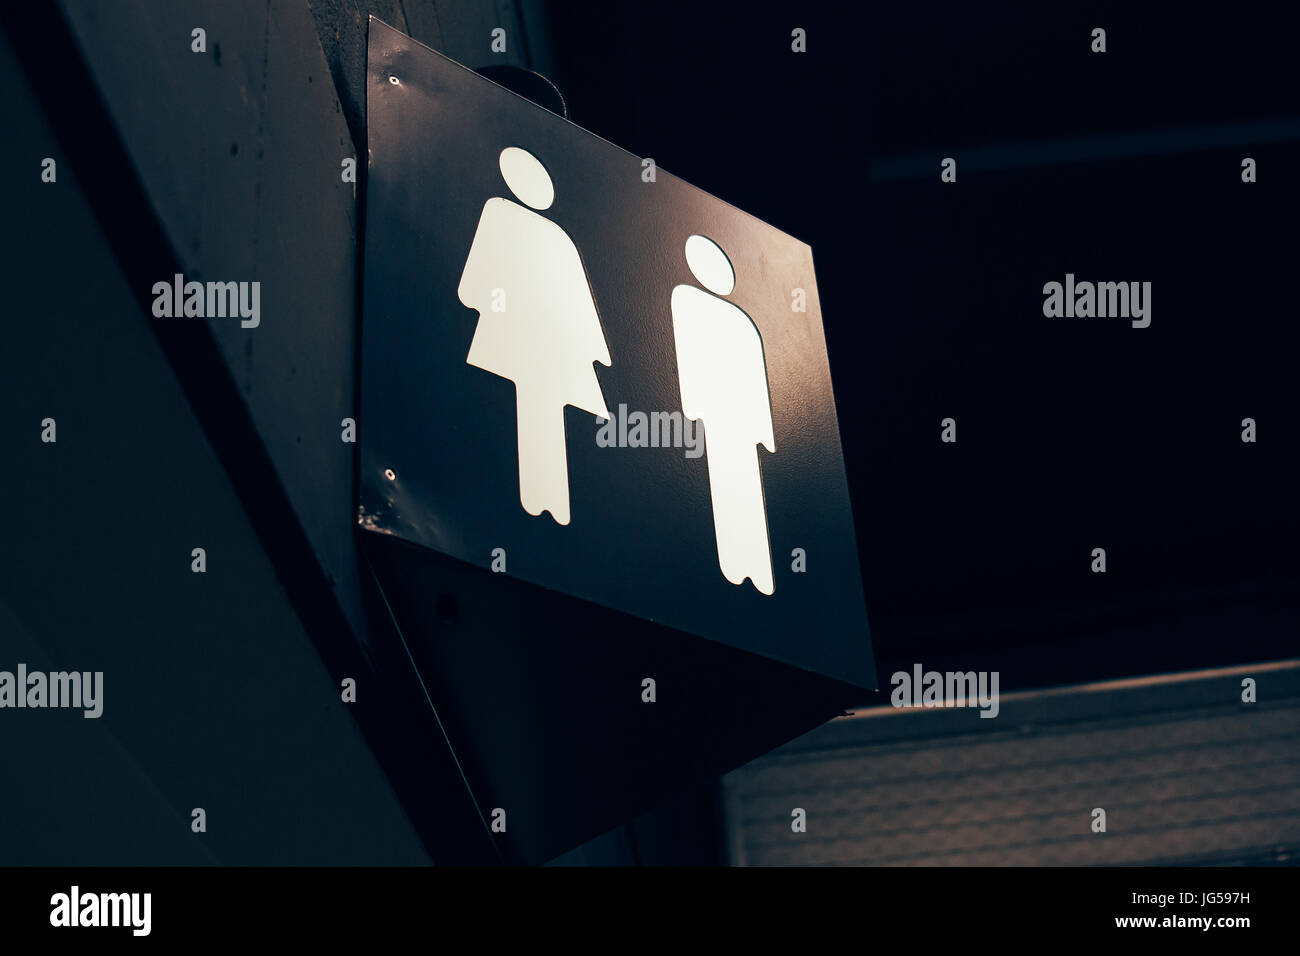 Toilet sign in a dark indoor room. Stock Photo